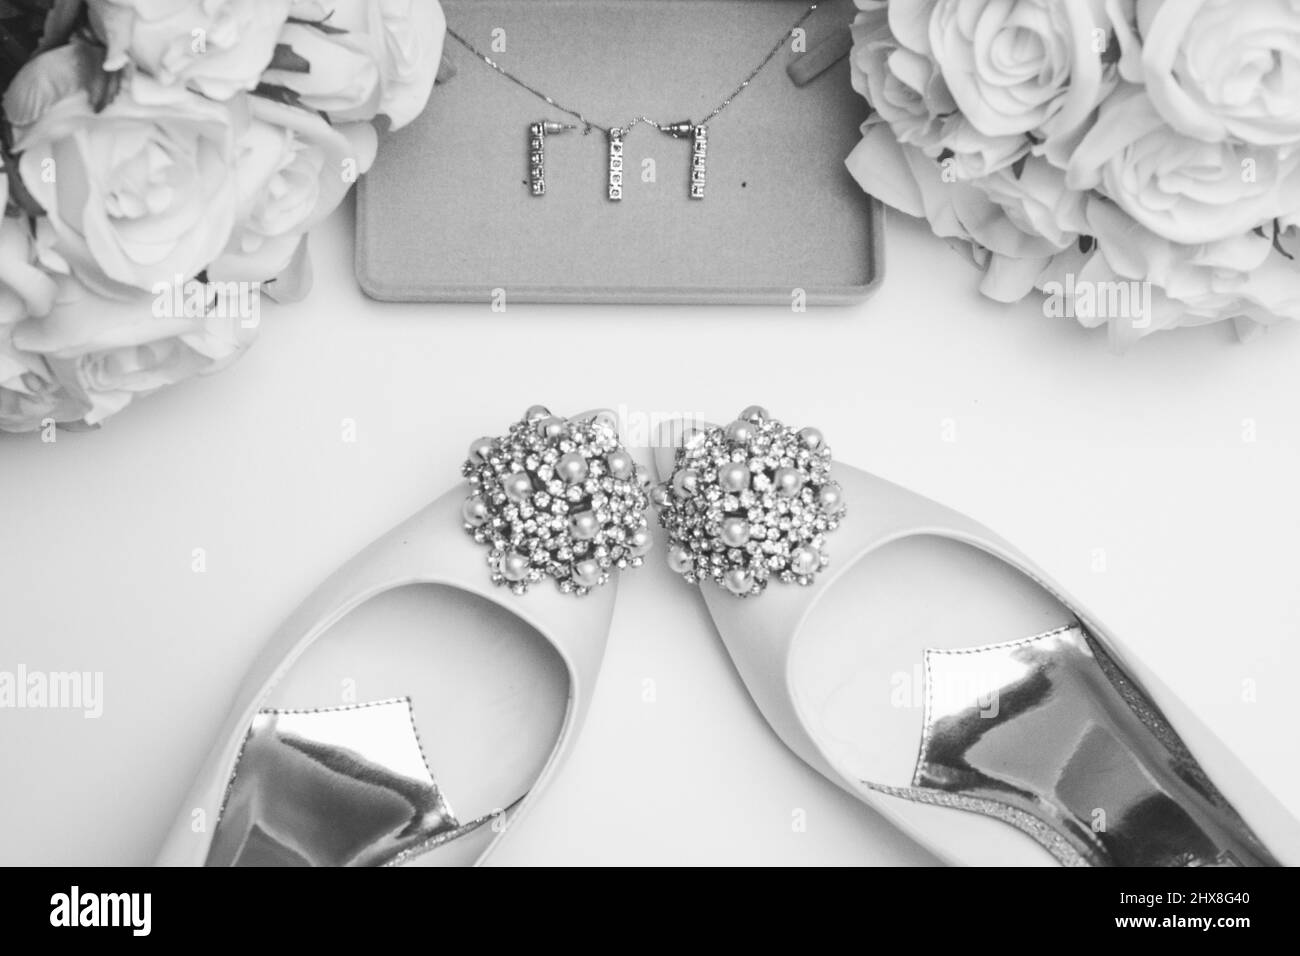 Hochzeitszubehör auf einem sauberen weißen Hintergrund. Schuhe, Blumen und  Schmuck Stockfotografie - Alamy